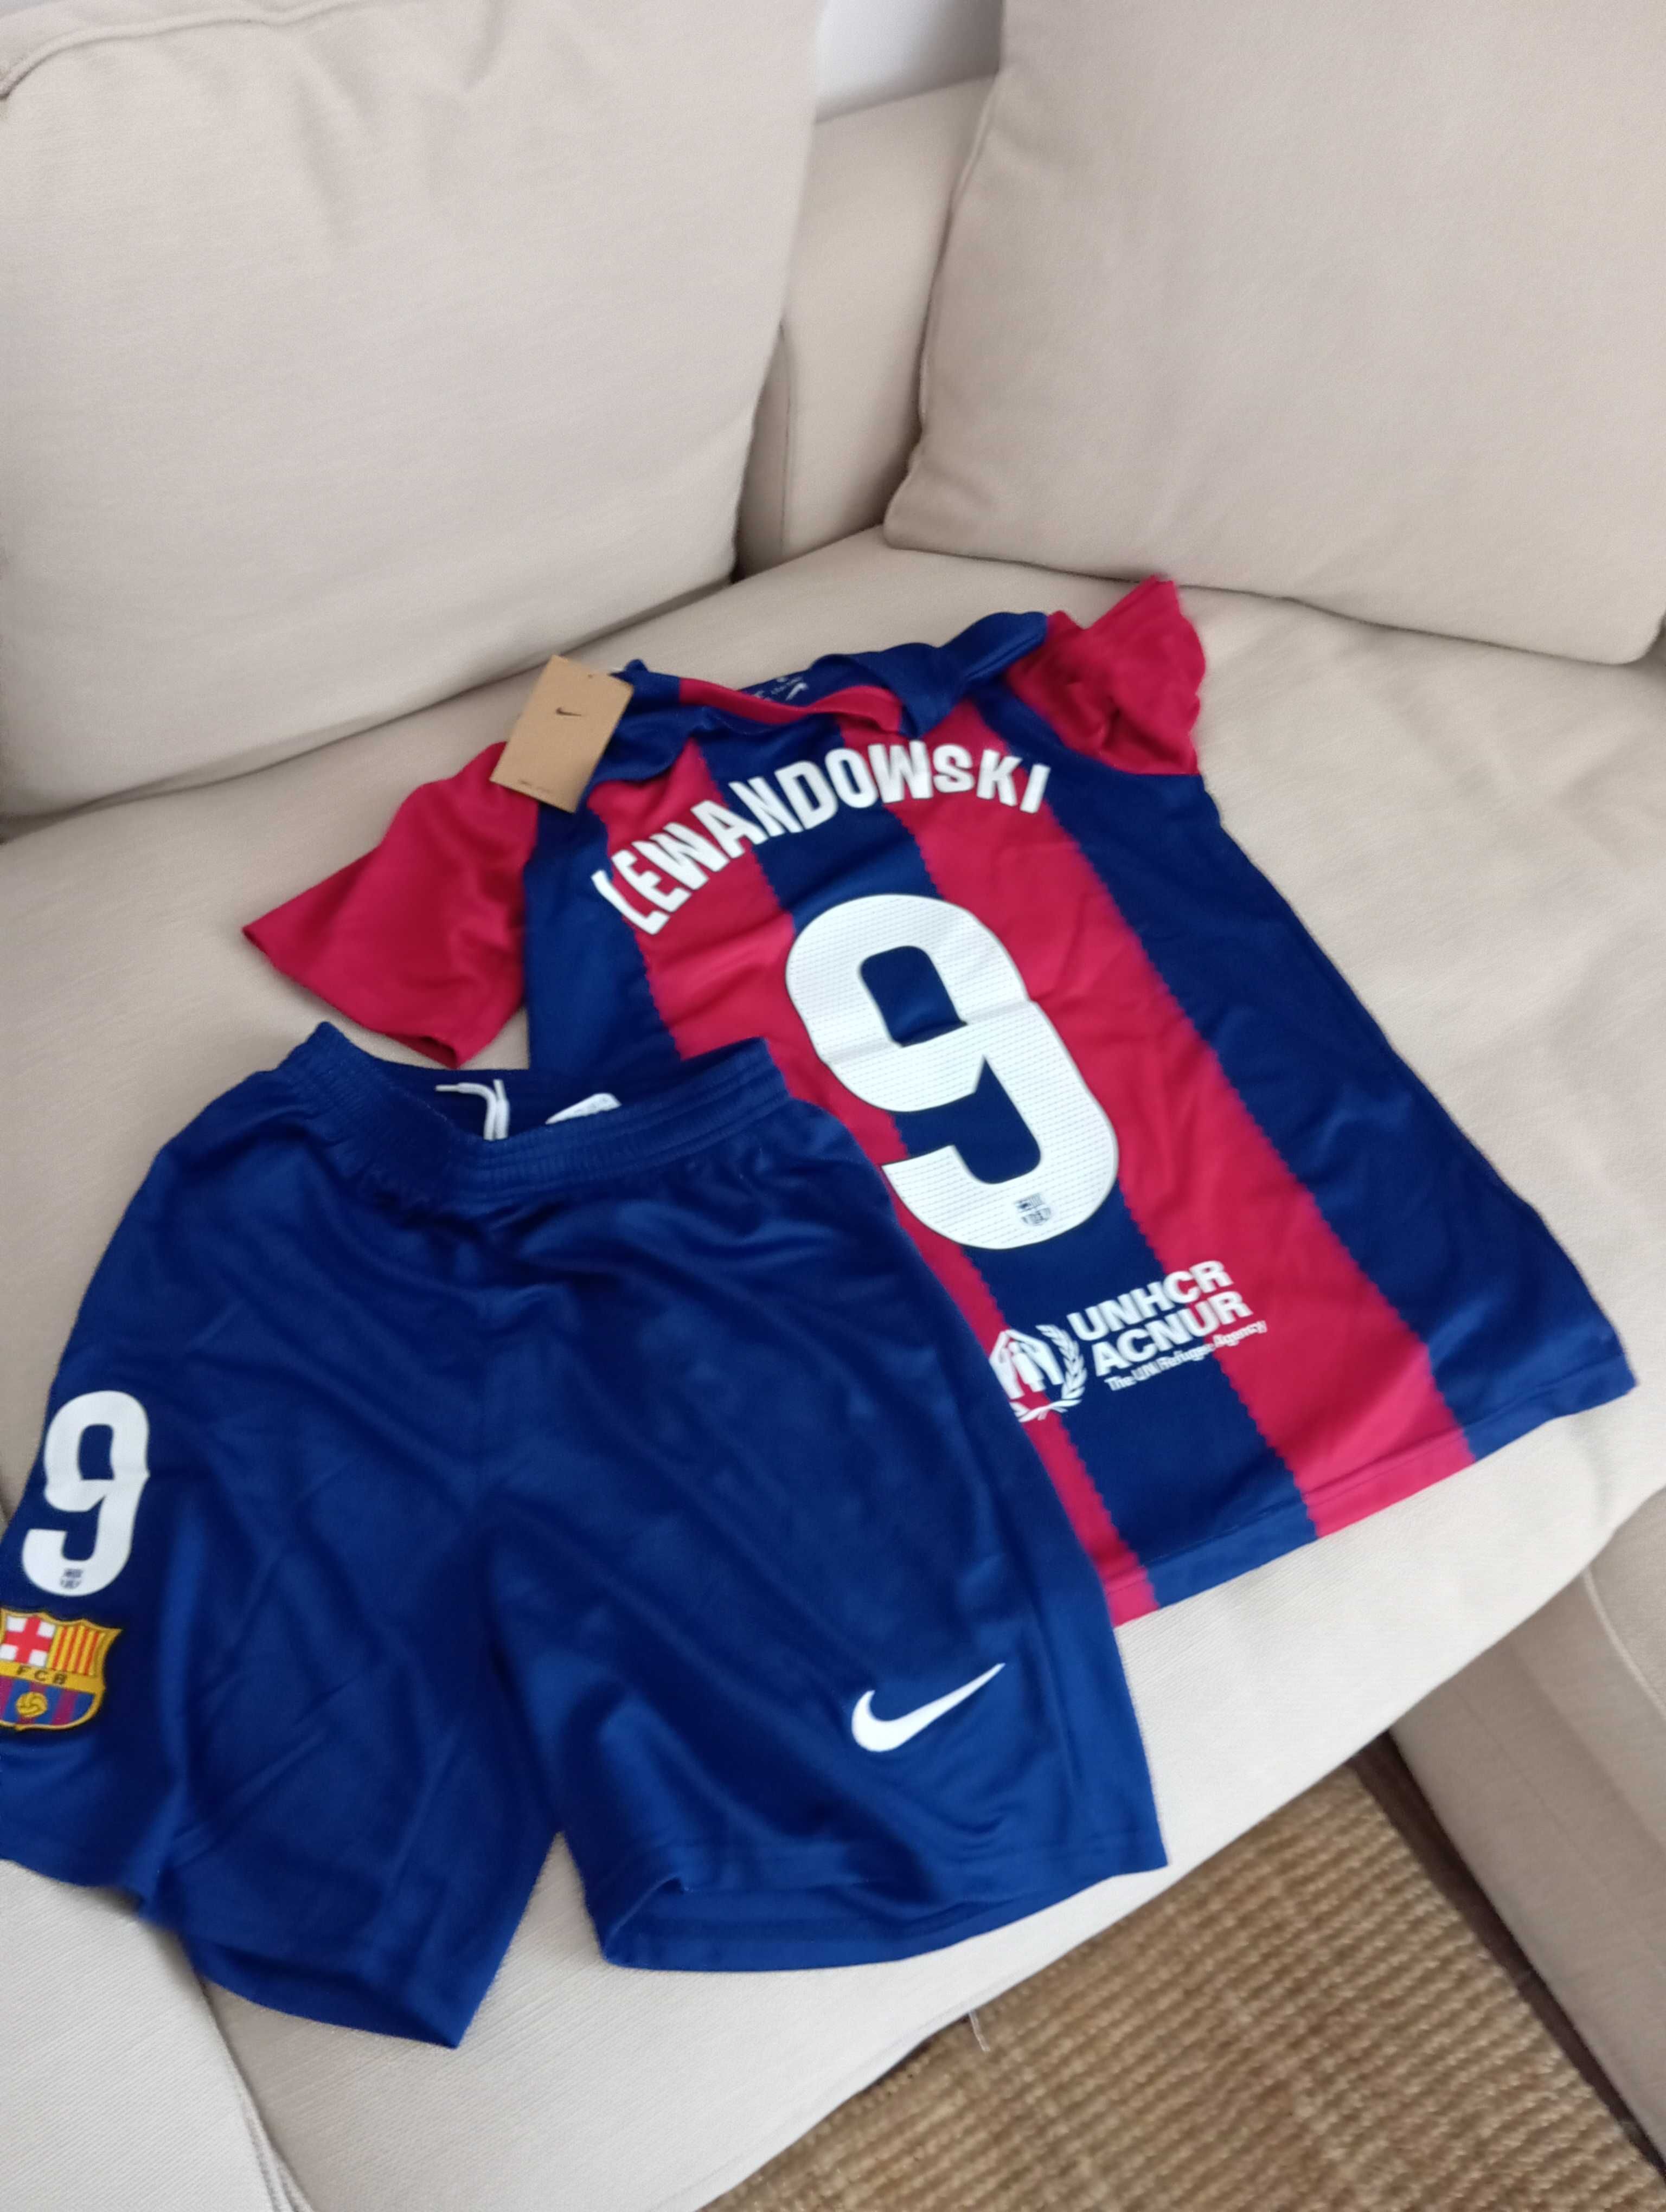 Koszulka i spodenki, Lewandowski-9, Nike. Produkt oryginalny